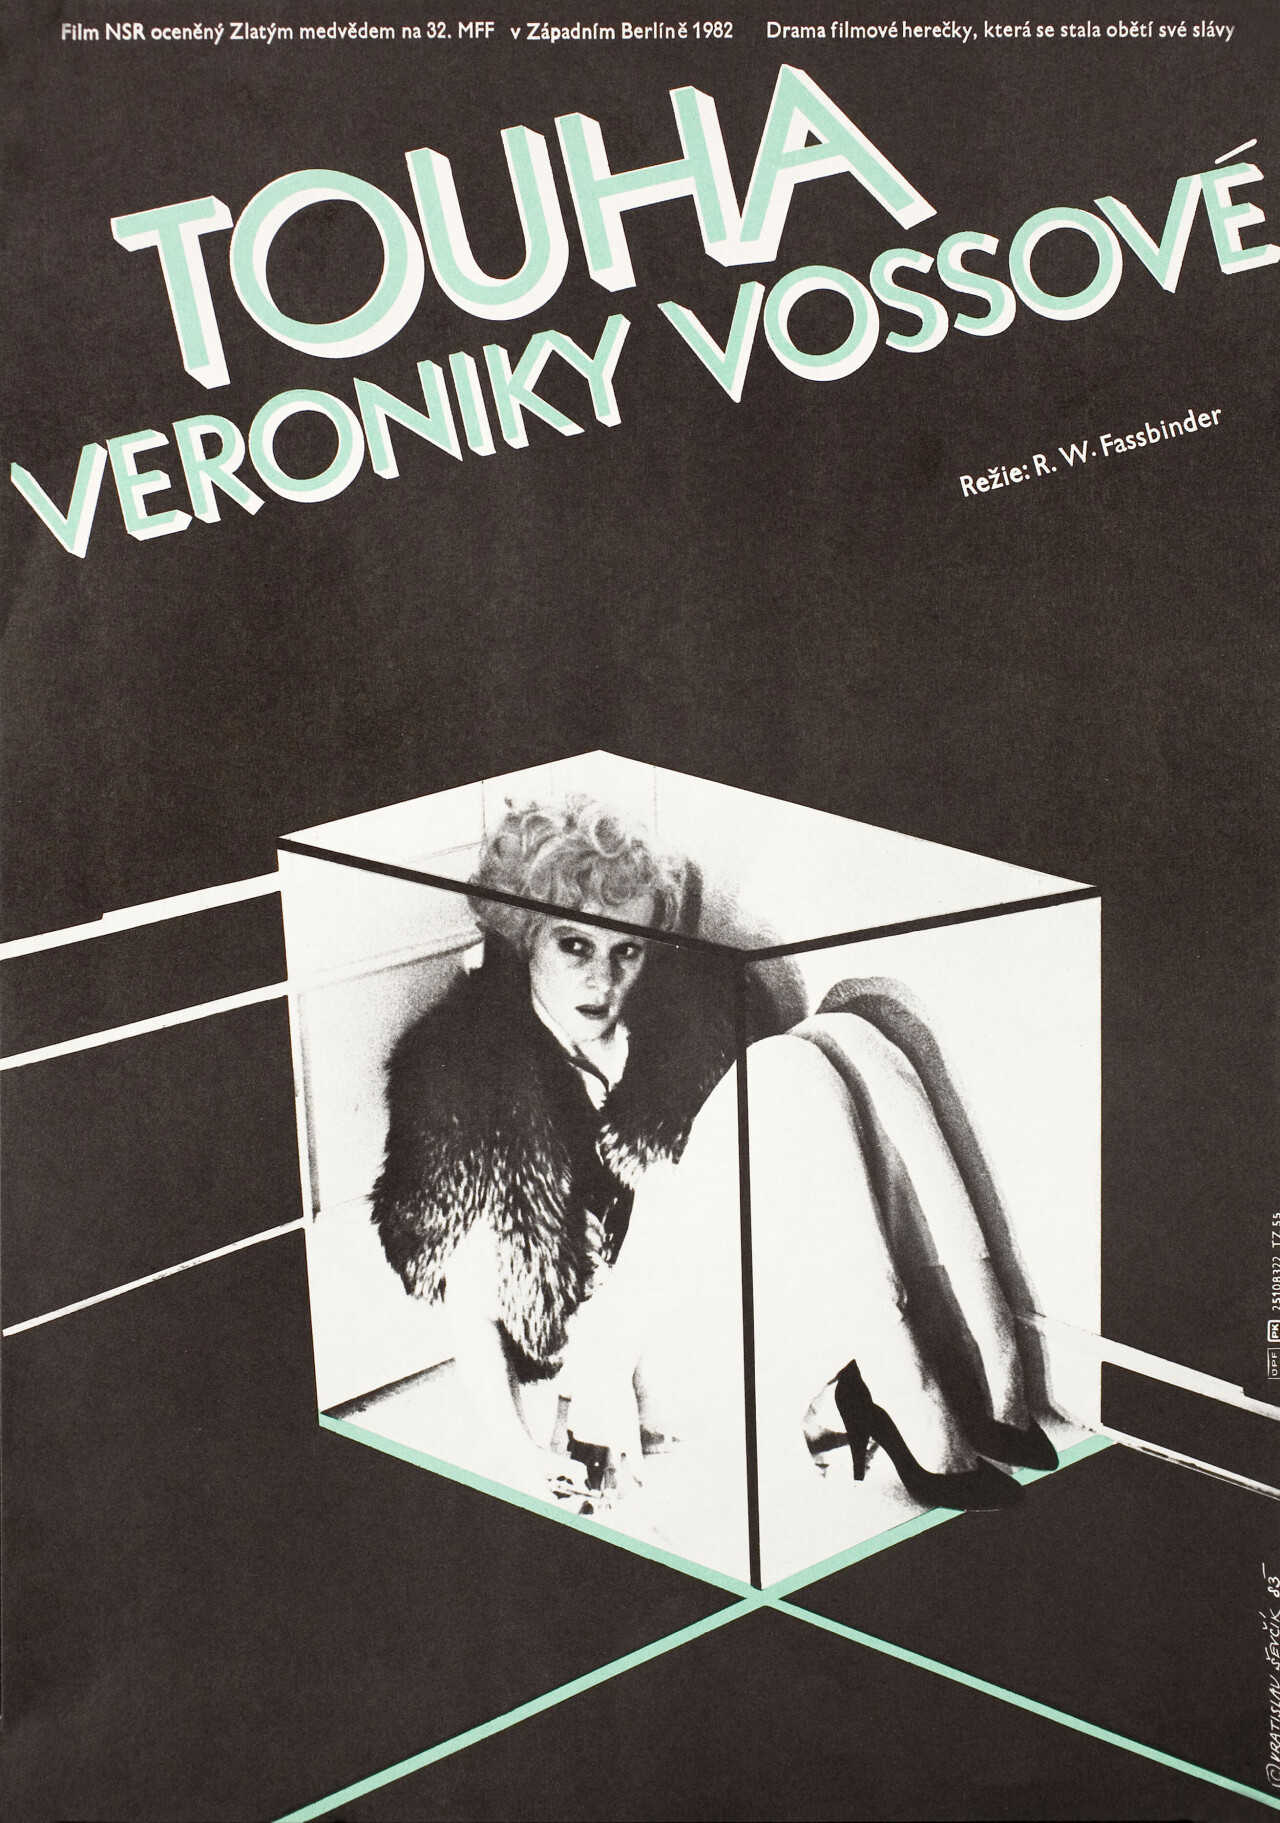 Тоска Вероники Фосс (Veronika Voss, 1982), режиссёр Райнер Вернер Фассбиндер, чехословацкий постер к фильму, автор Вратислав Шевчик (графический дизайн, 1988 год)